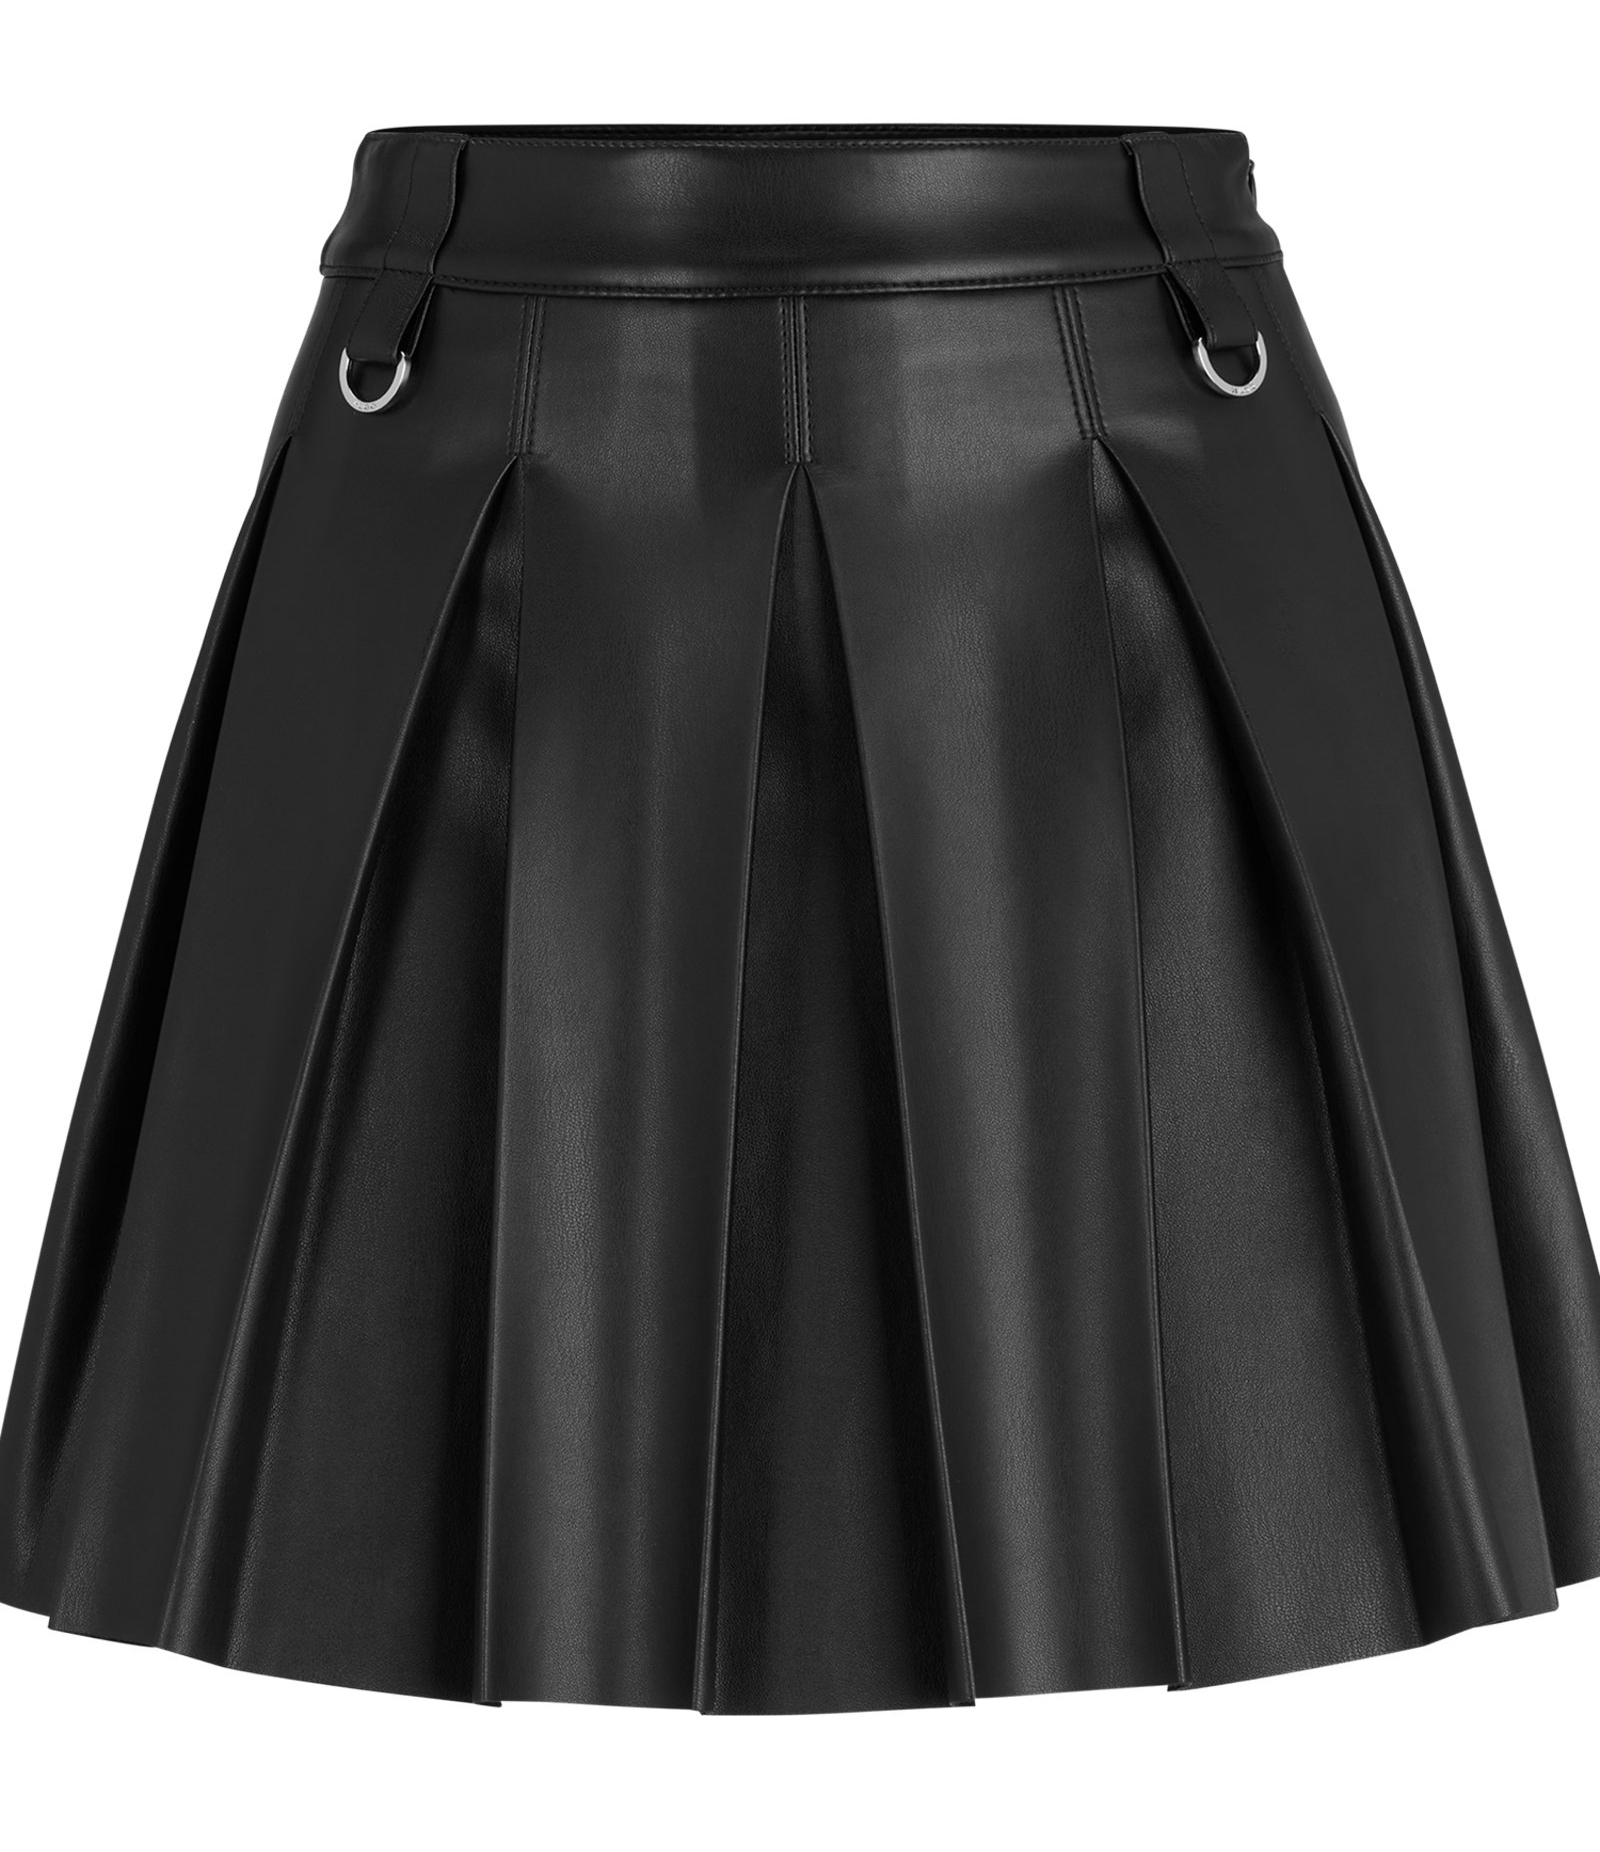 Юбка Hugo Pleated Mini In Faux Leather, черный женская плиссированная мини юбка из пу кожи с высокой талией